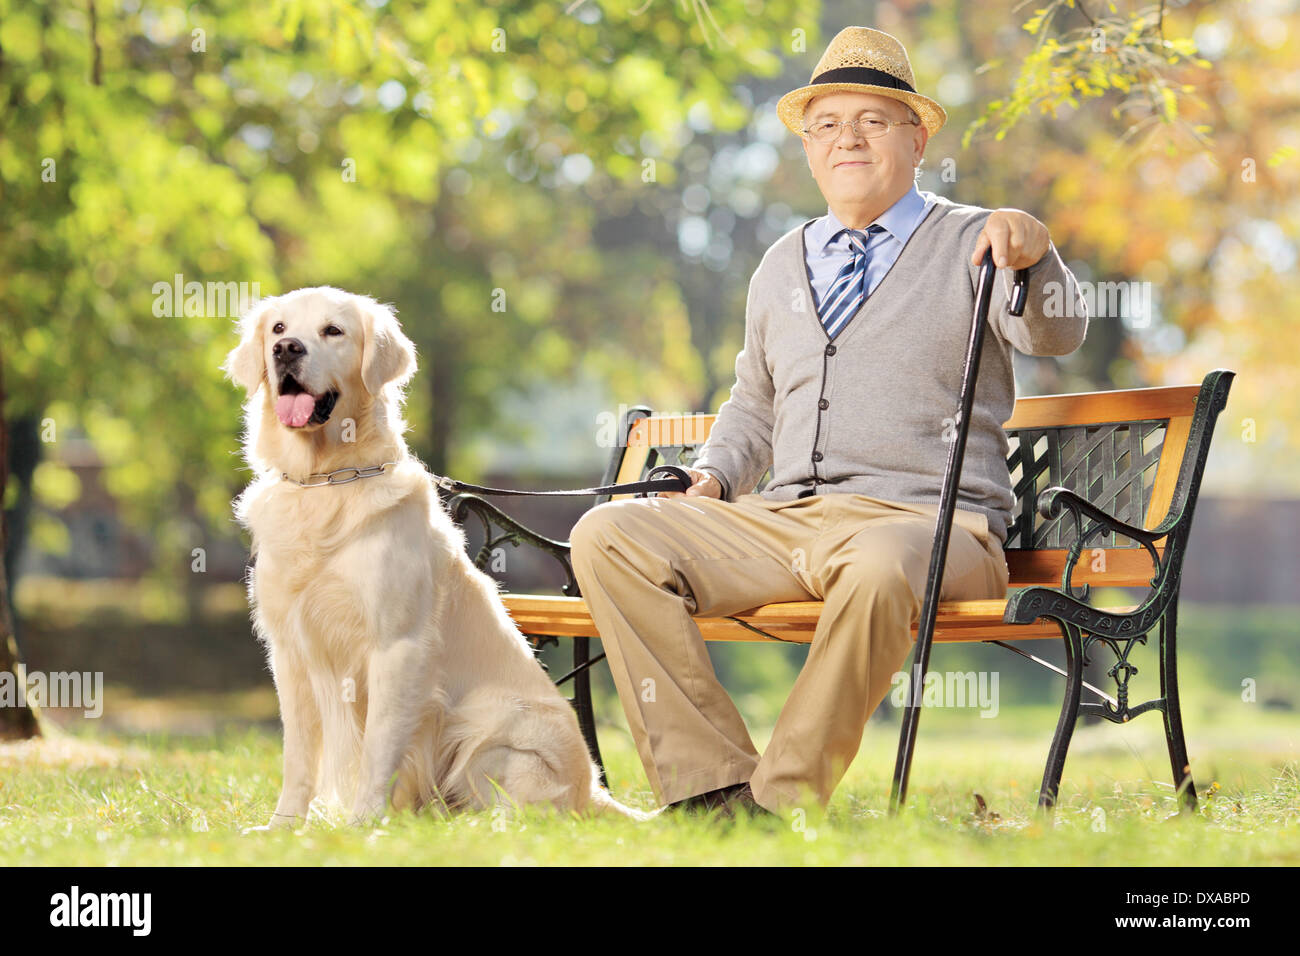 Hauts homme assis sur un banc en bois avec son labrador retriever dog relaxing in a park Banque D'Images